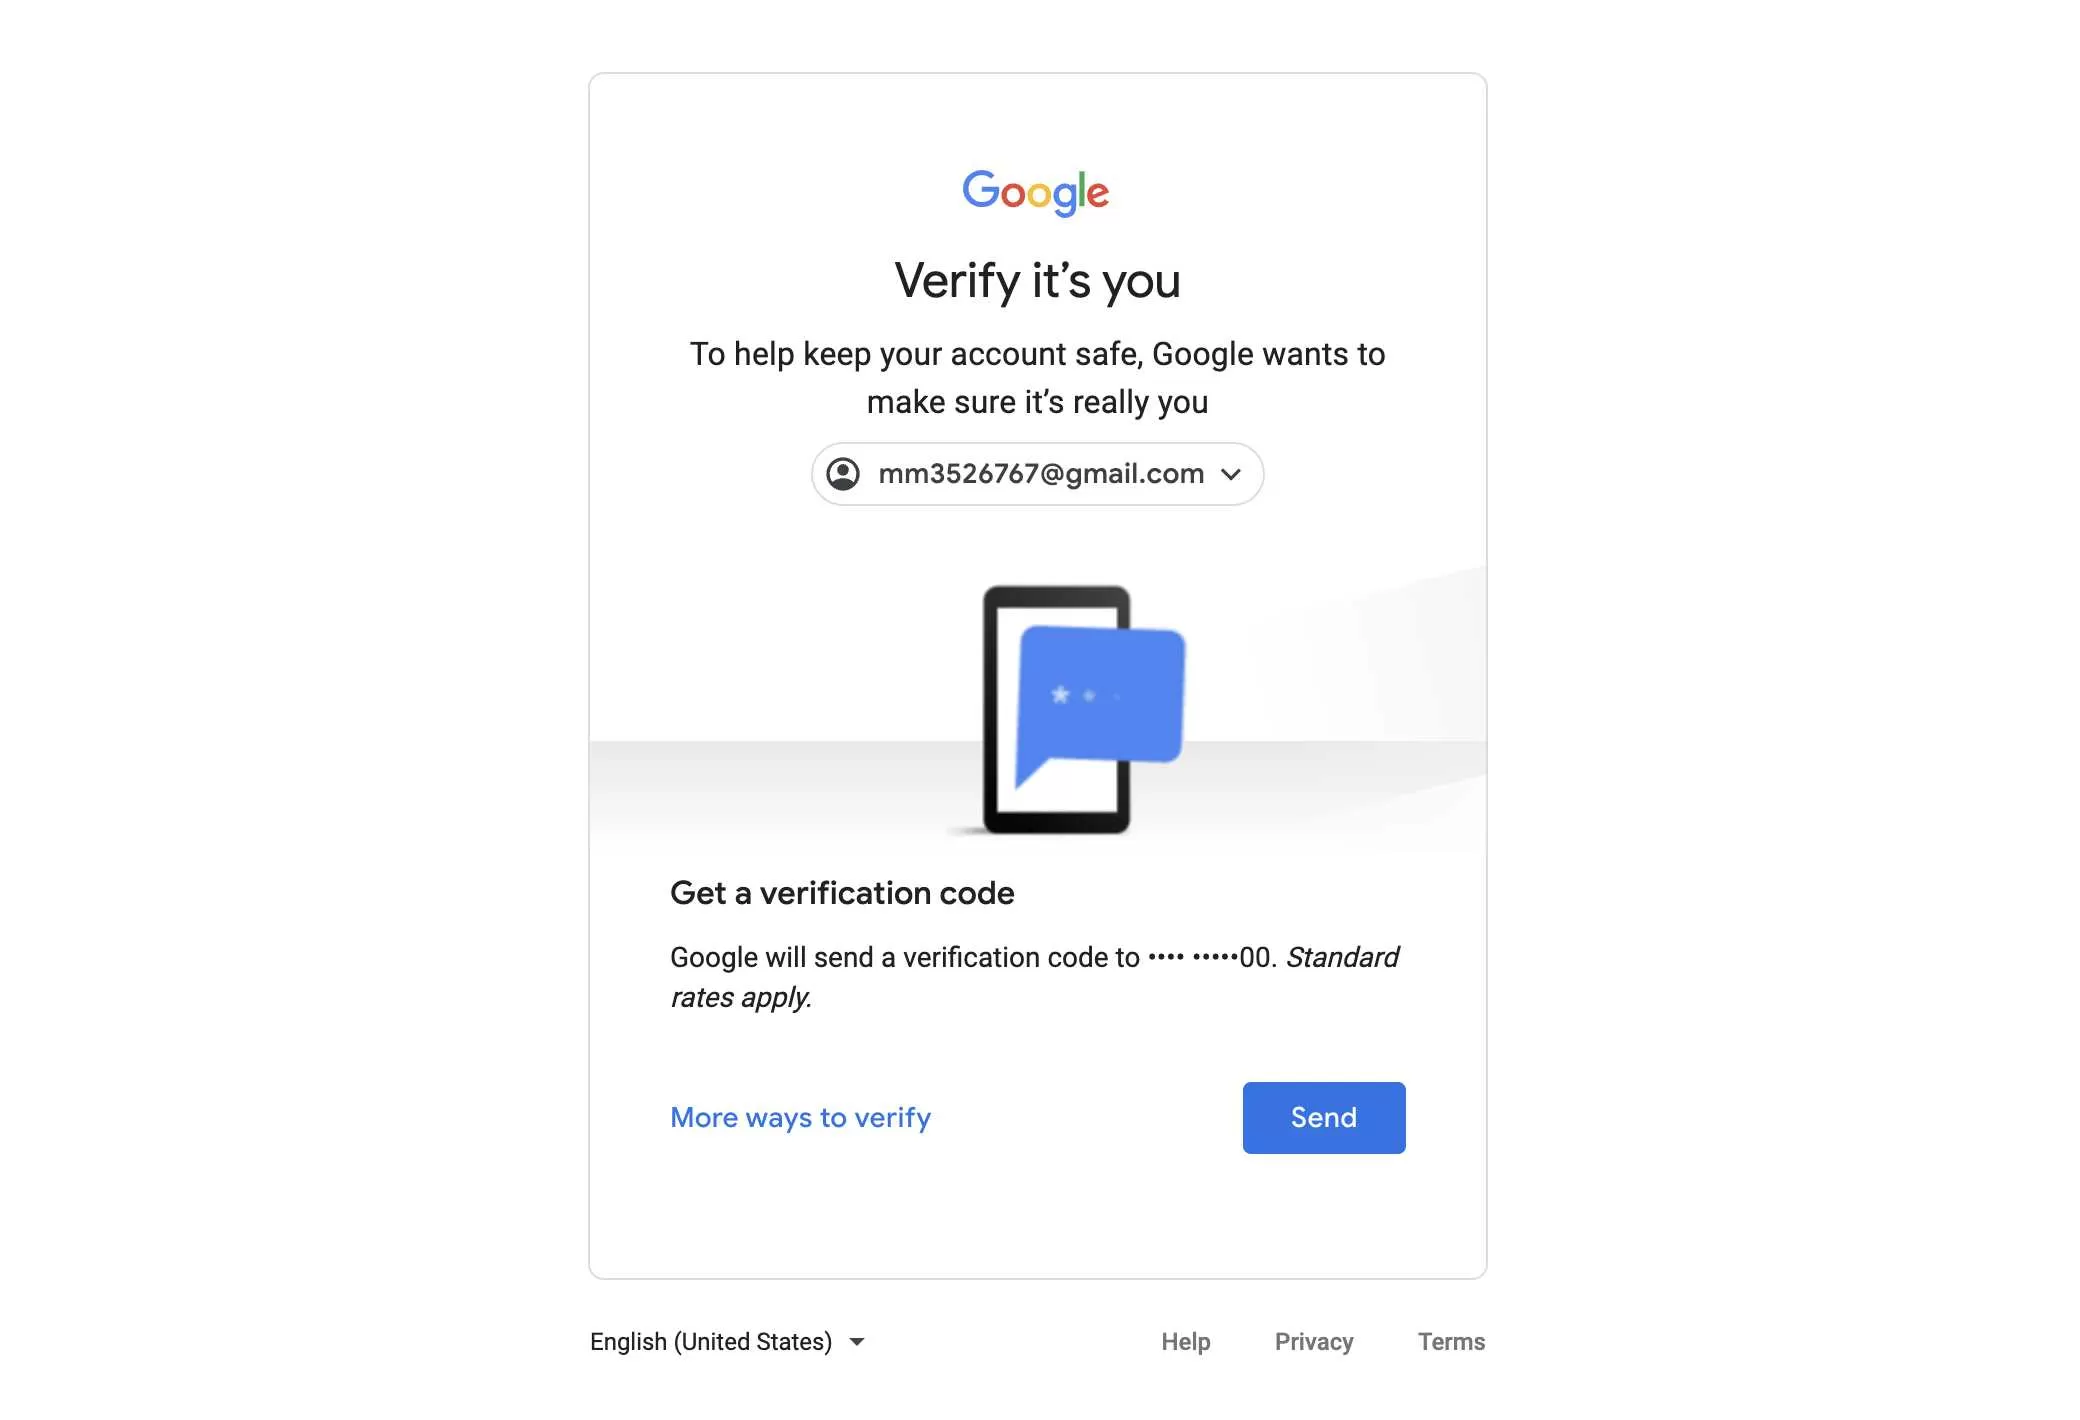 谷歌账号修改密码,Gmail邮箱不能修改密码,谷歌改密